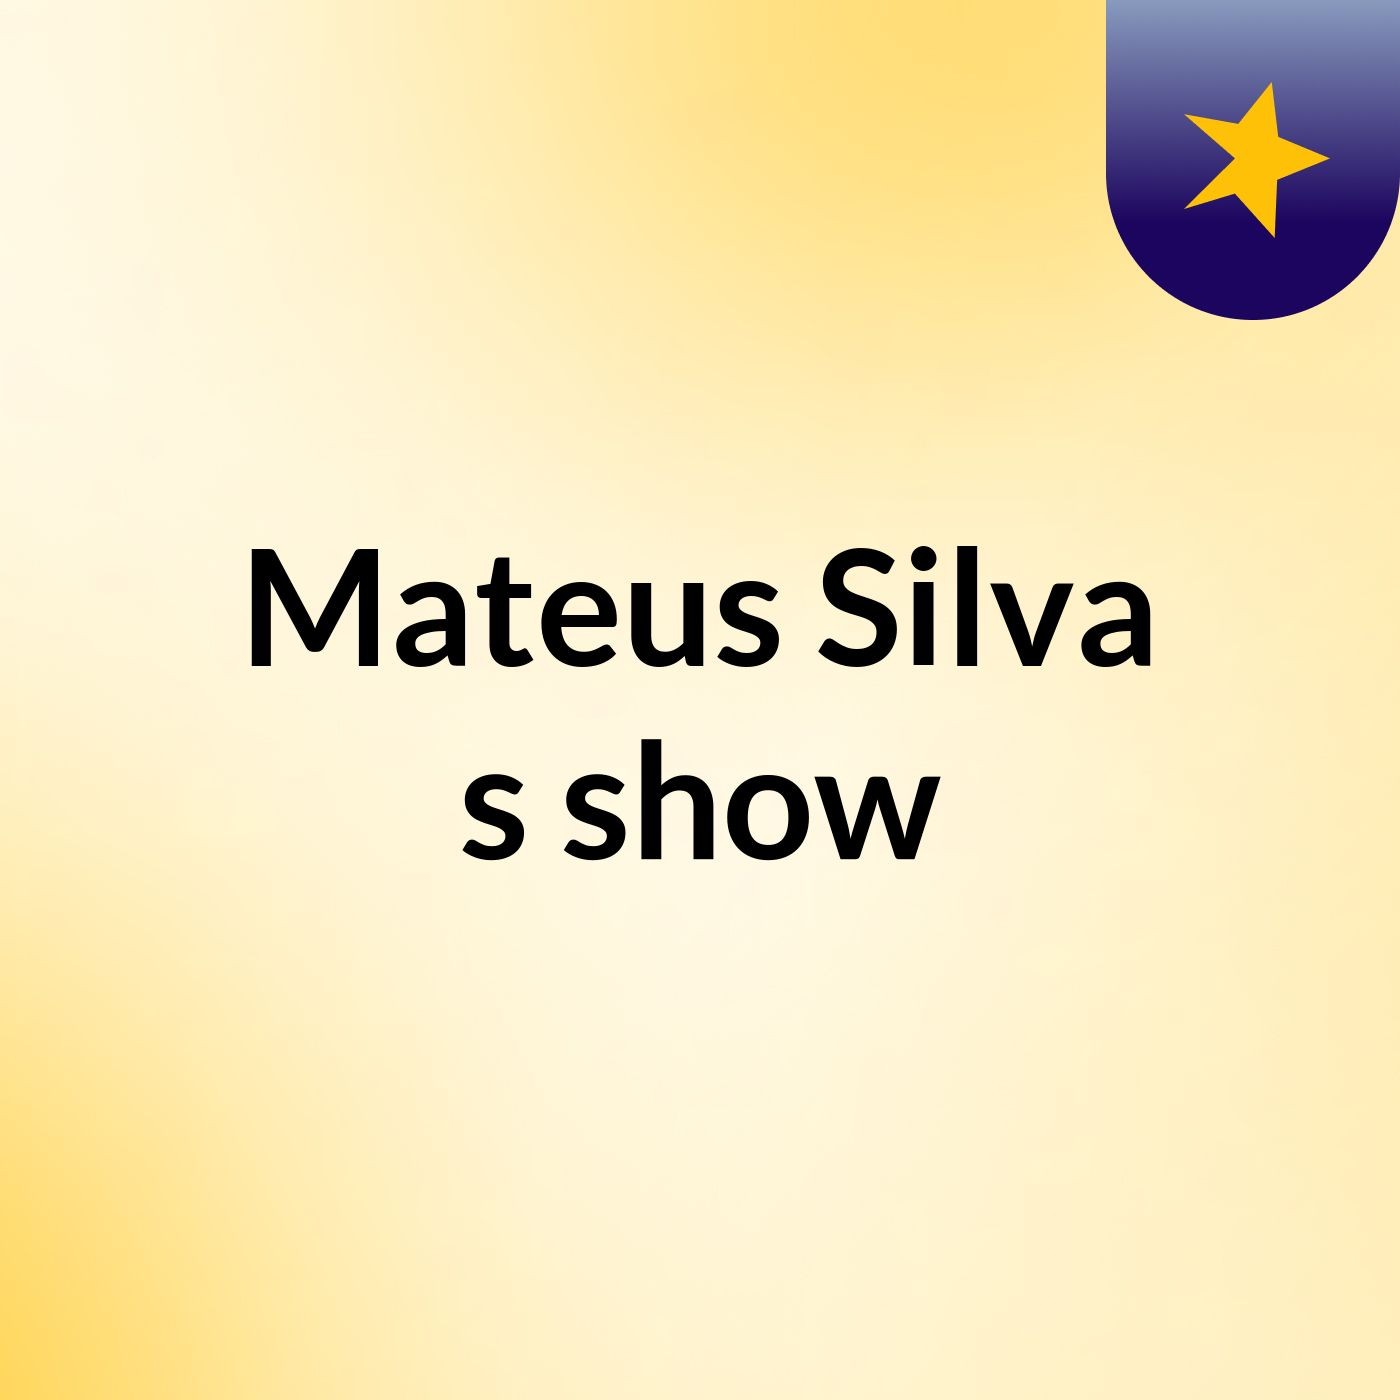 Mateus Silva's show